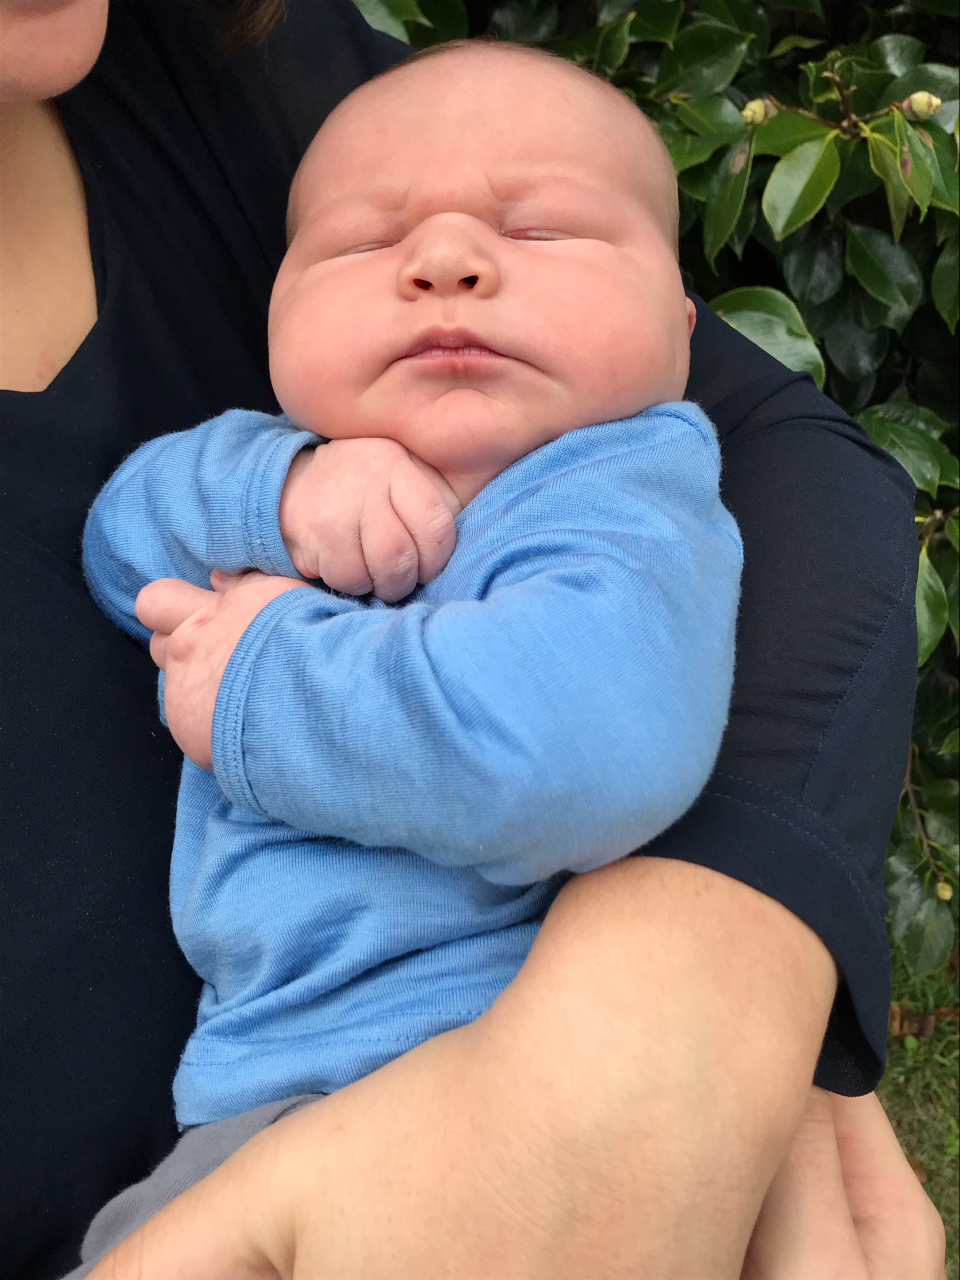 Kinderrijmpjes Componist Pacifische eilanden Whopping 6kg (13-pound) newborn shocks mum and Hamilton medical staff - NZ  Herald